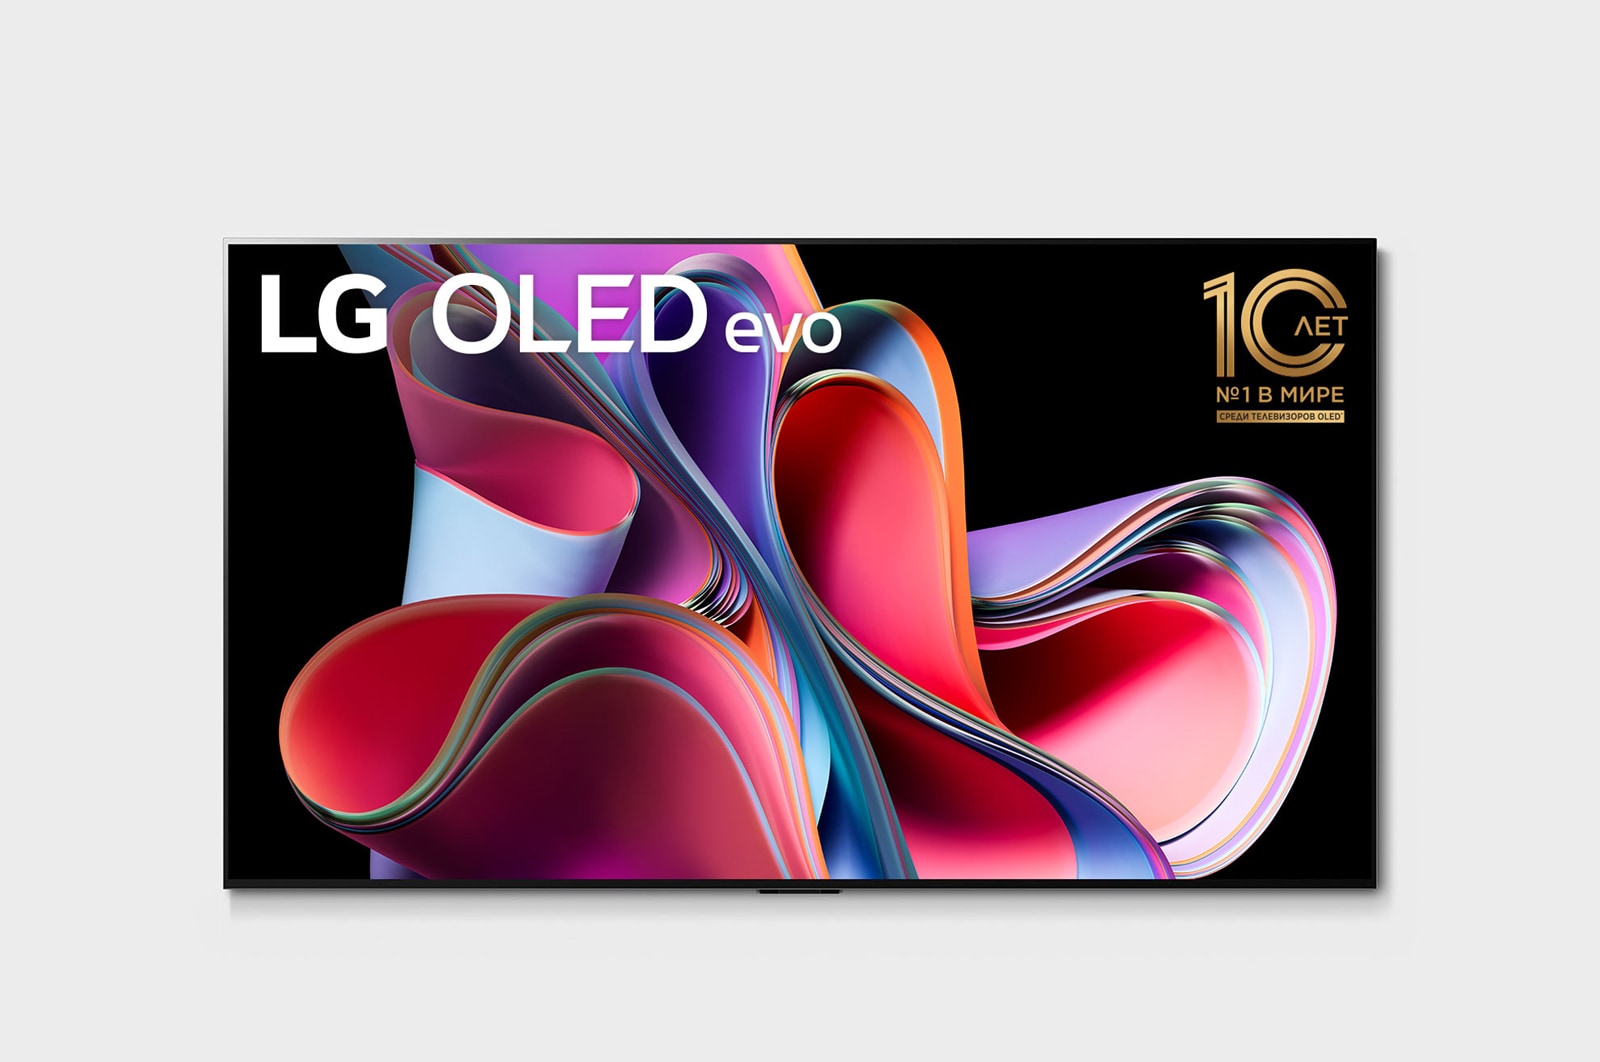 LG 4K Ultra HD OLED телевизор 55'' LG OLED55G3RLA, Вид спереди LG OLED evo серии Gallery, OLED55G3RLA